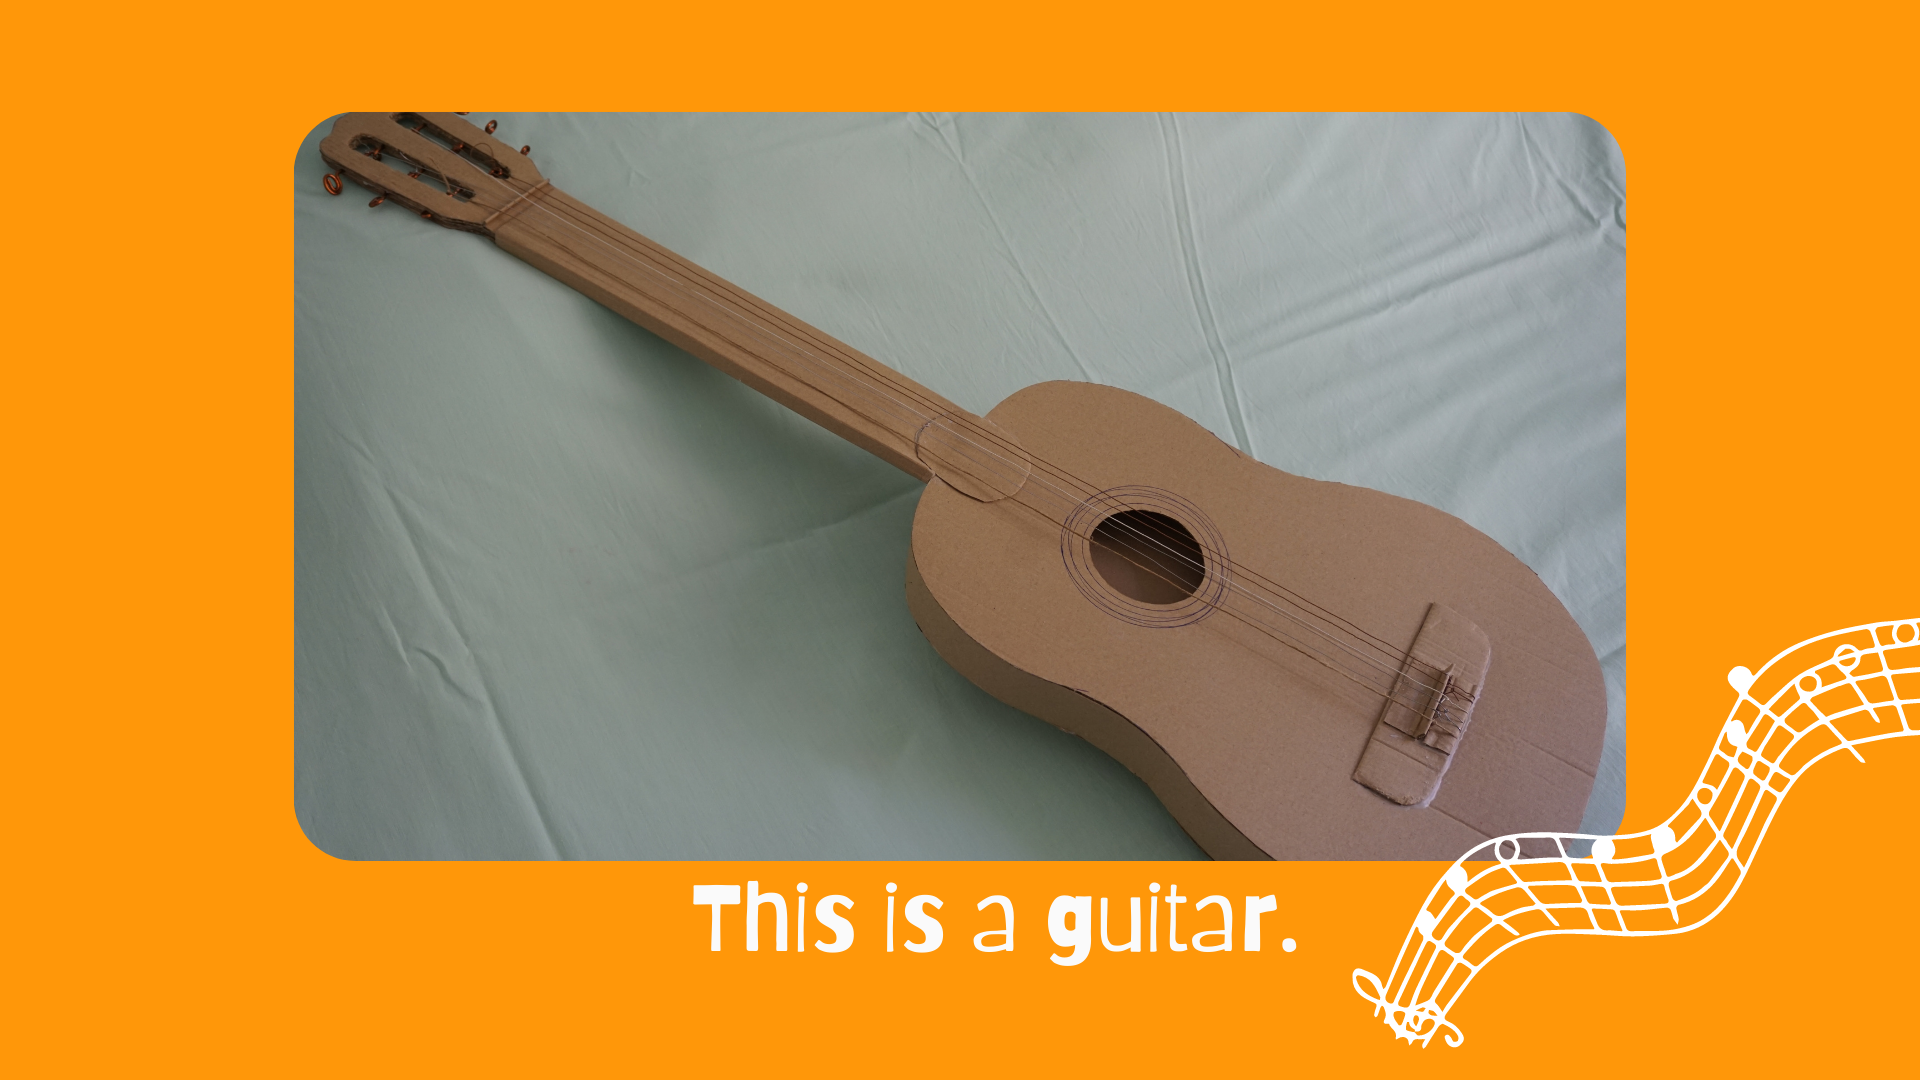 En la imagen puedes ver una guitarra marrón hecha de cartón, cable y cuerda recicladas